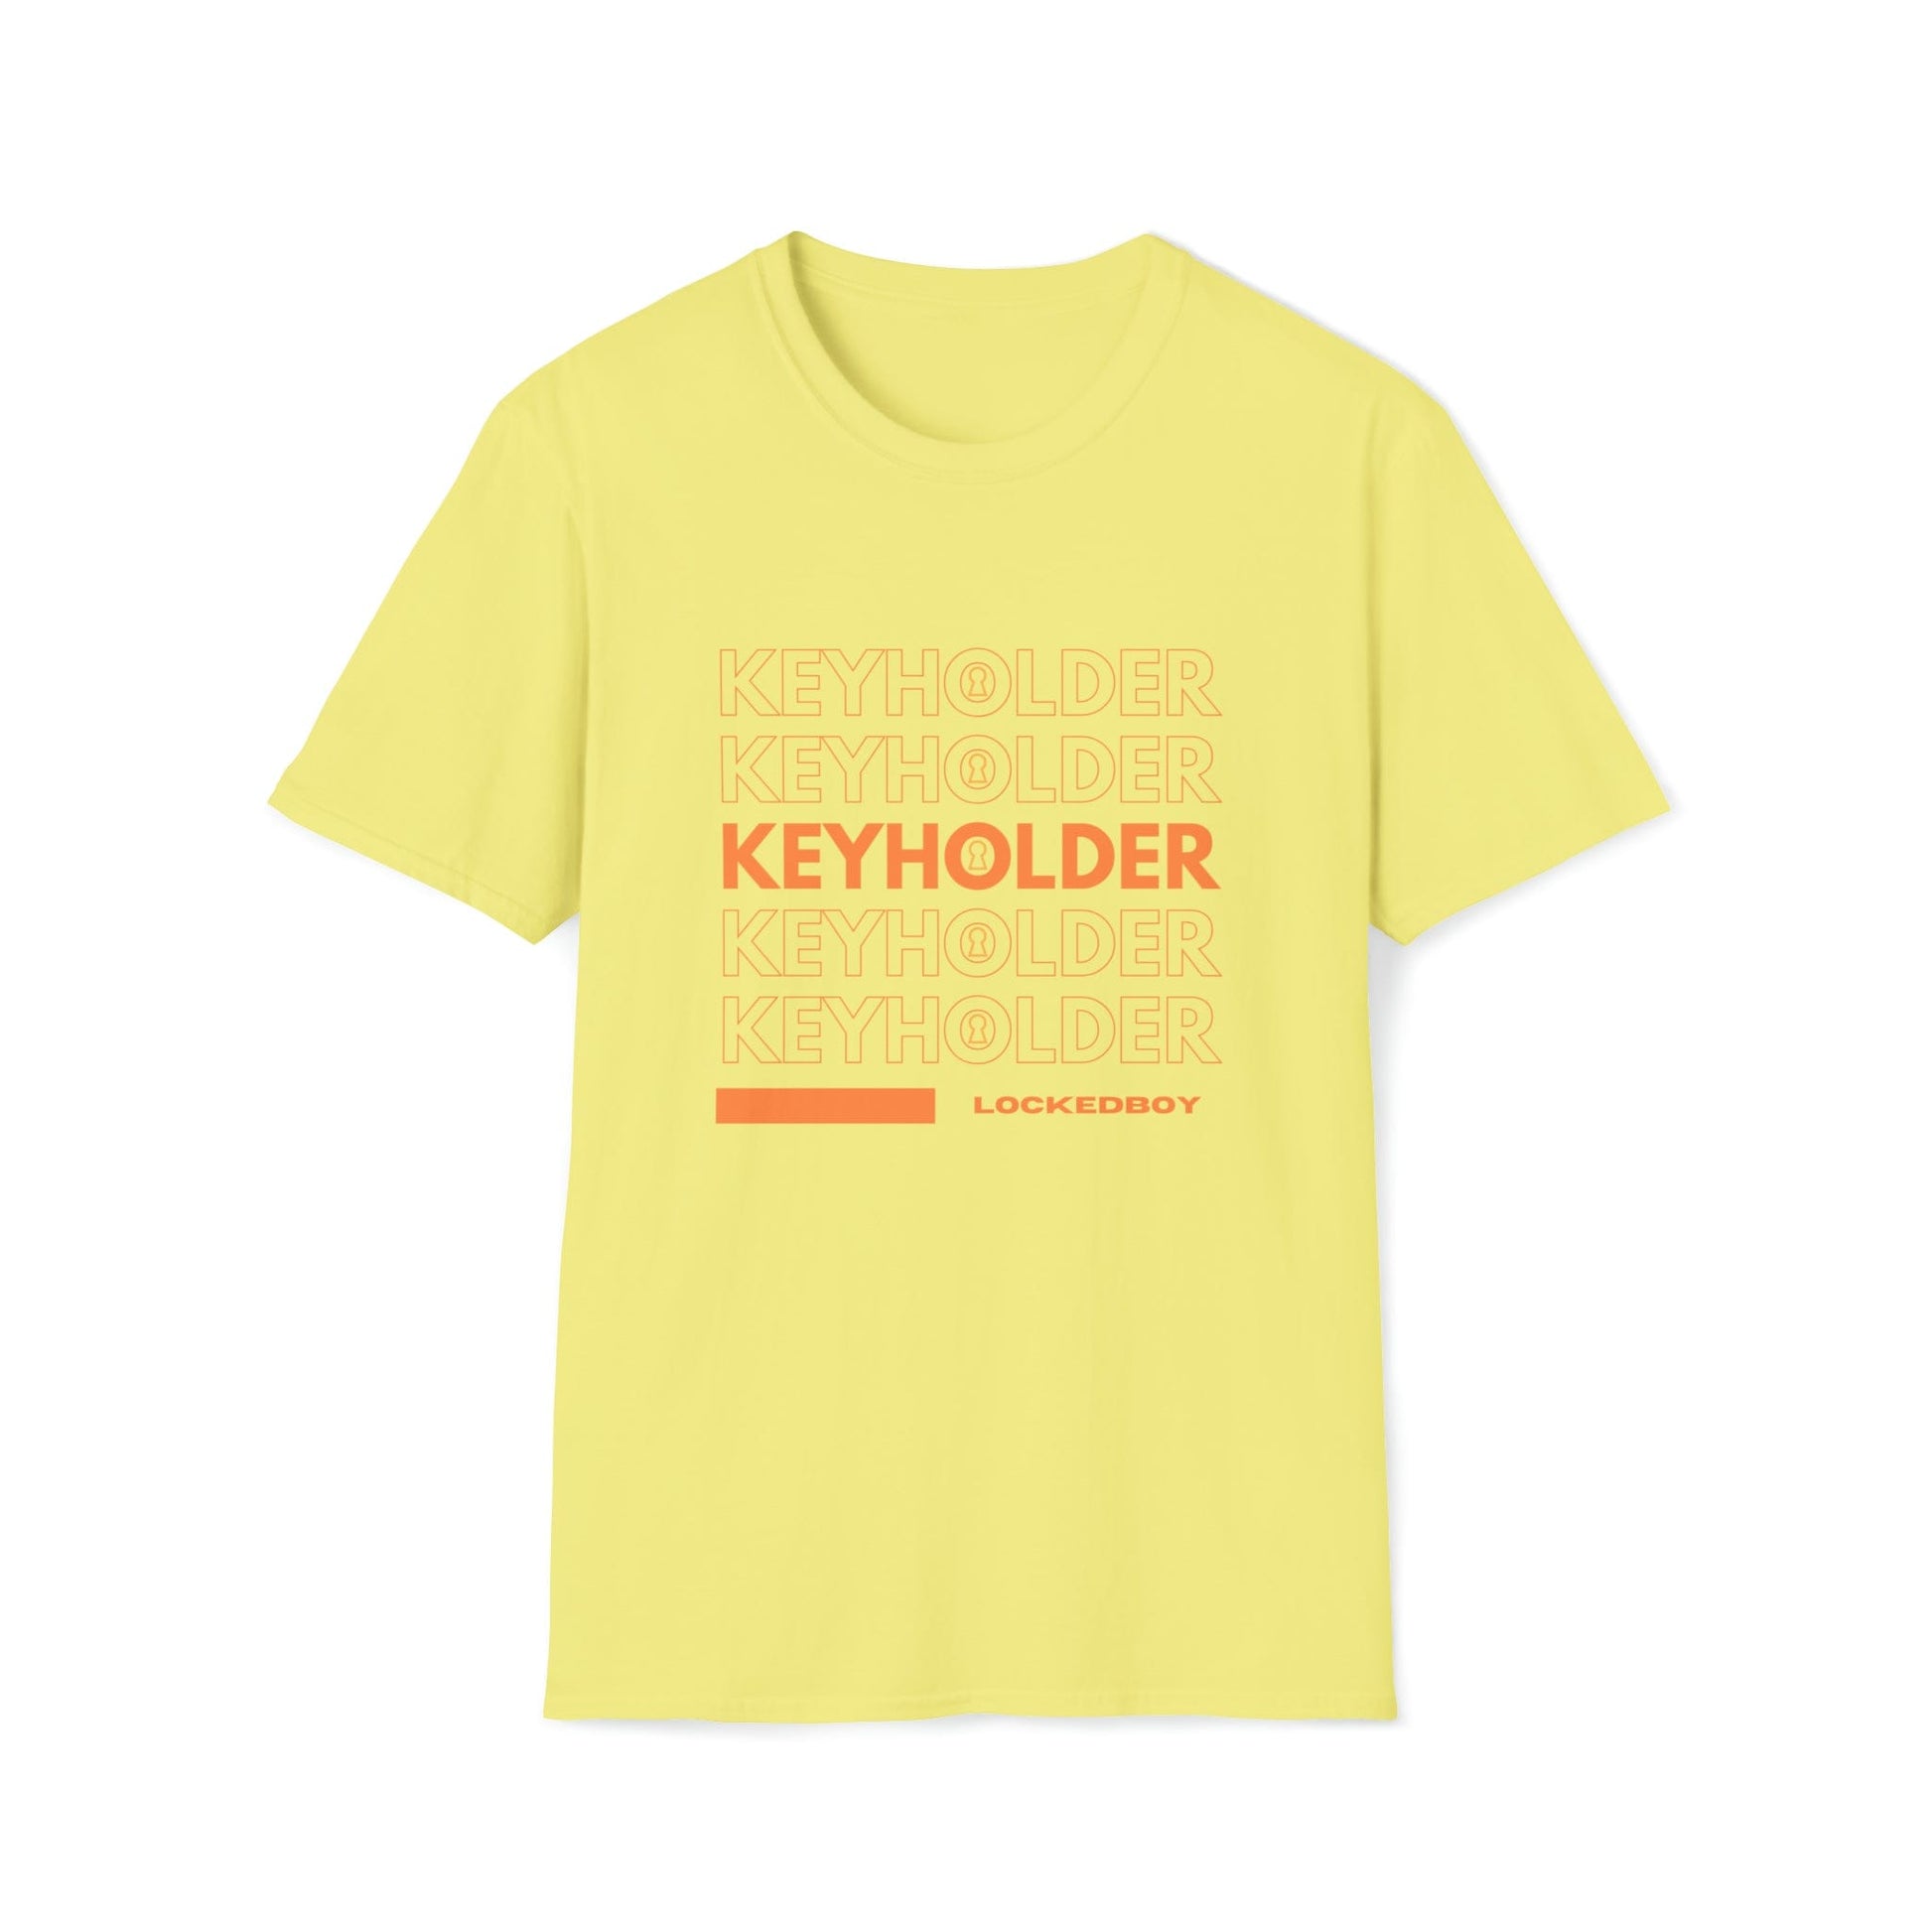 T-Shirt Cornsilk / S KEYHOLDER bag Inspo - Chastity Shirts by LockedBoy Athletic LEATHERDADDY BATOR